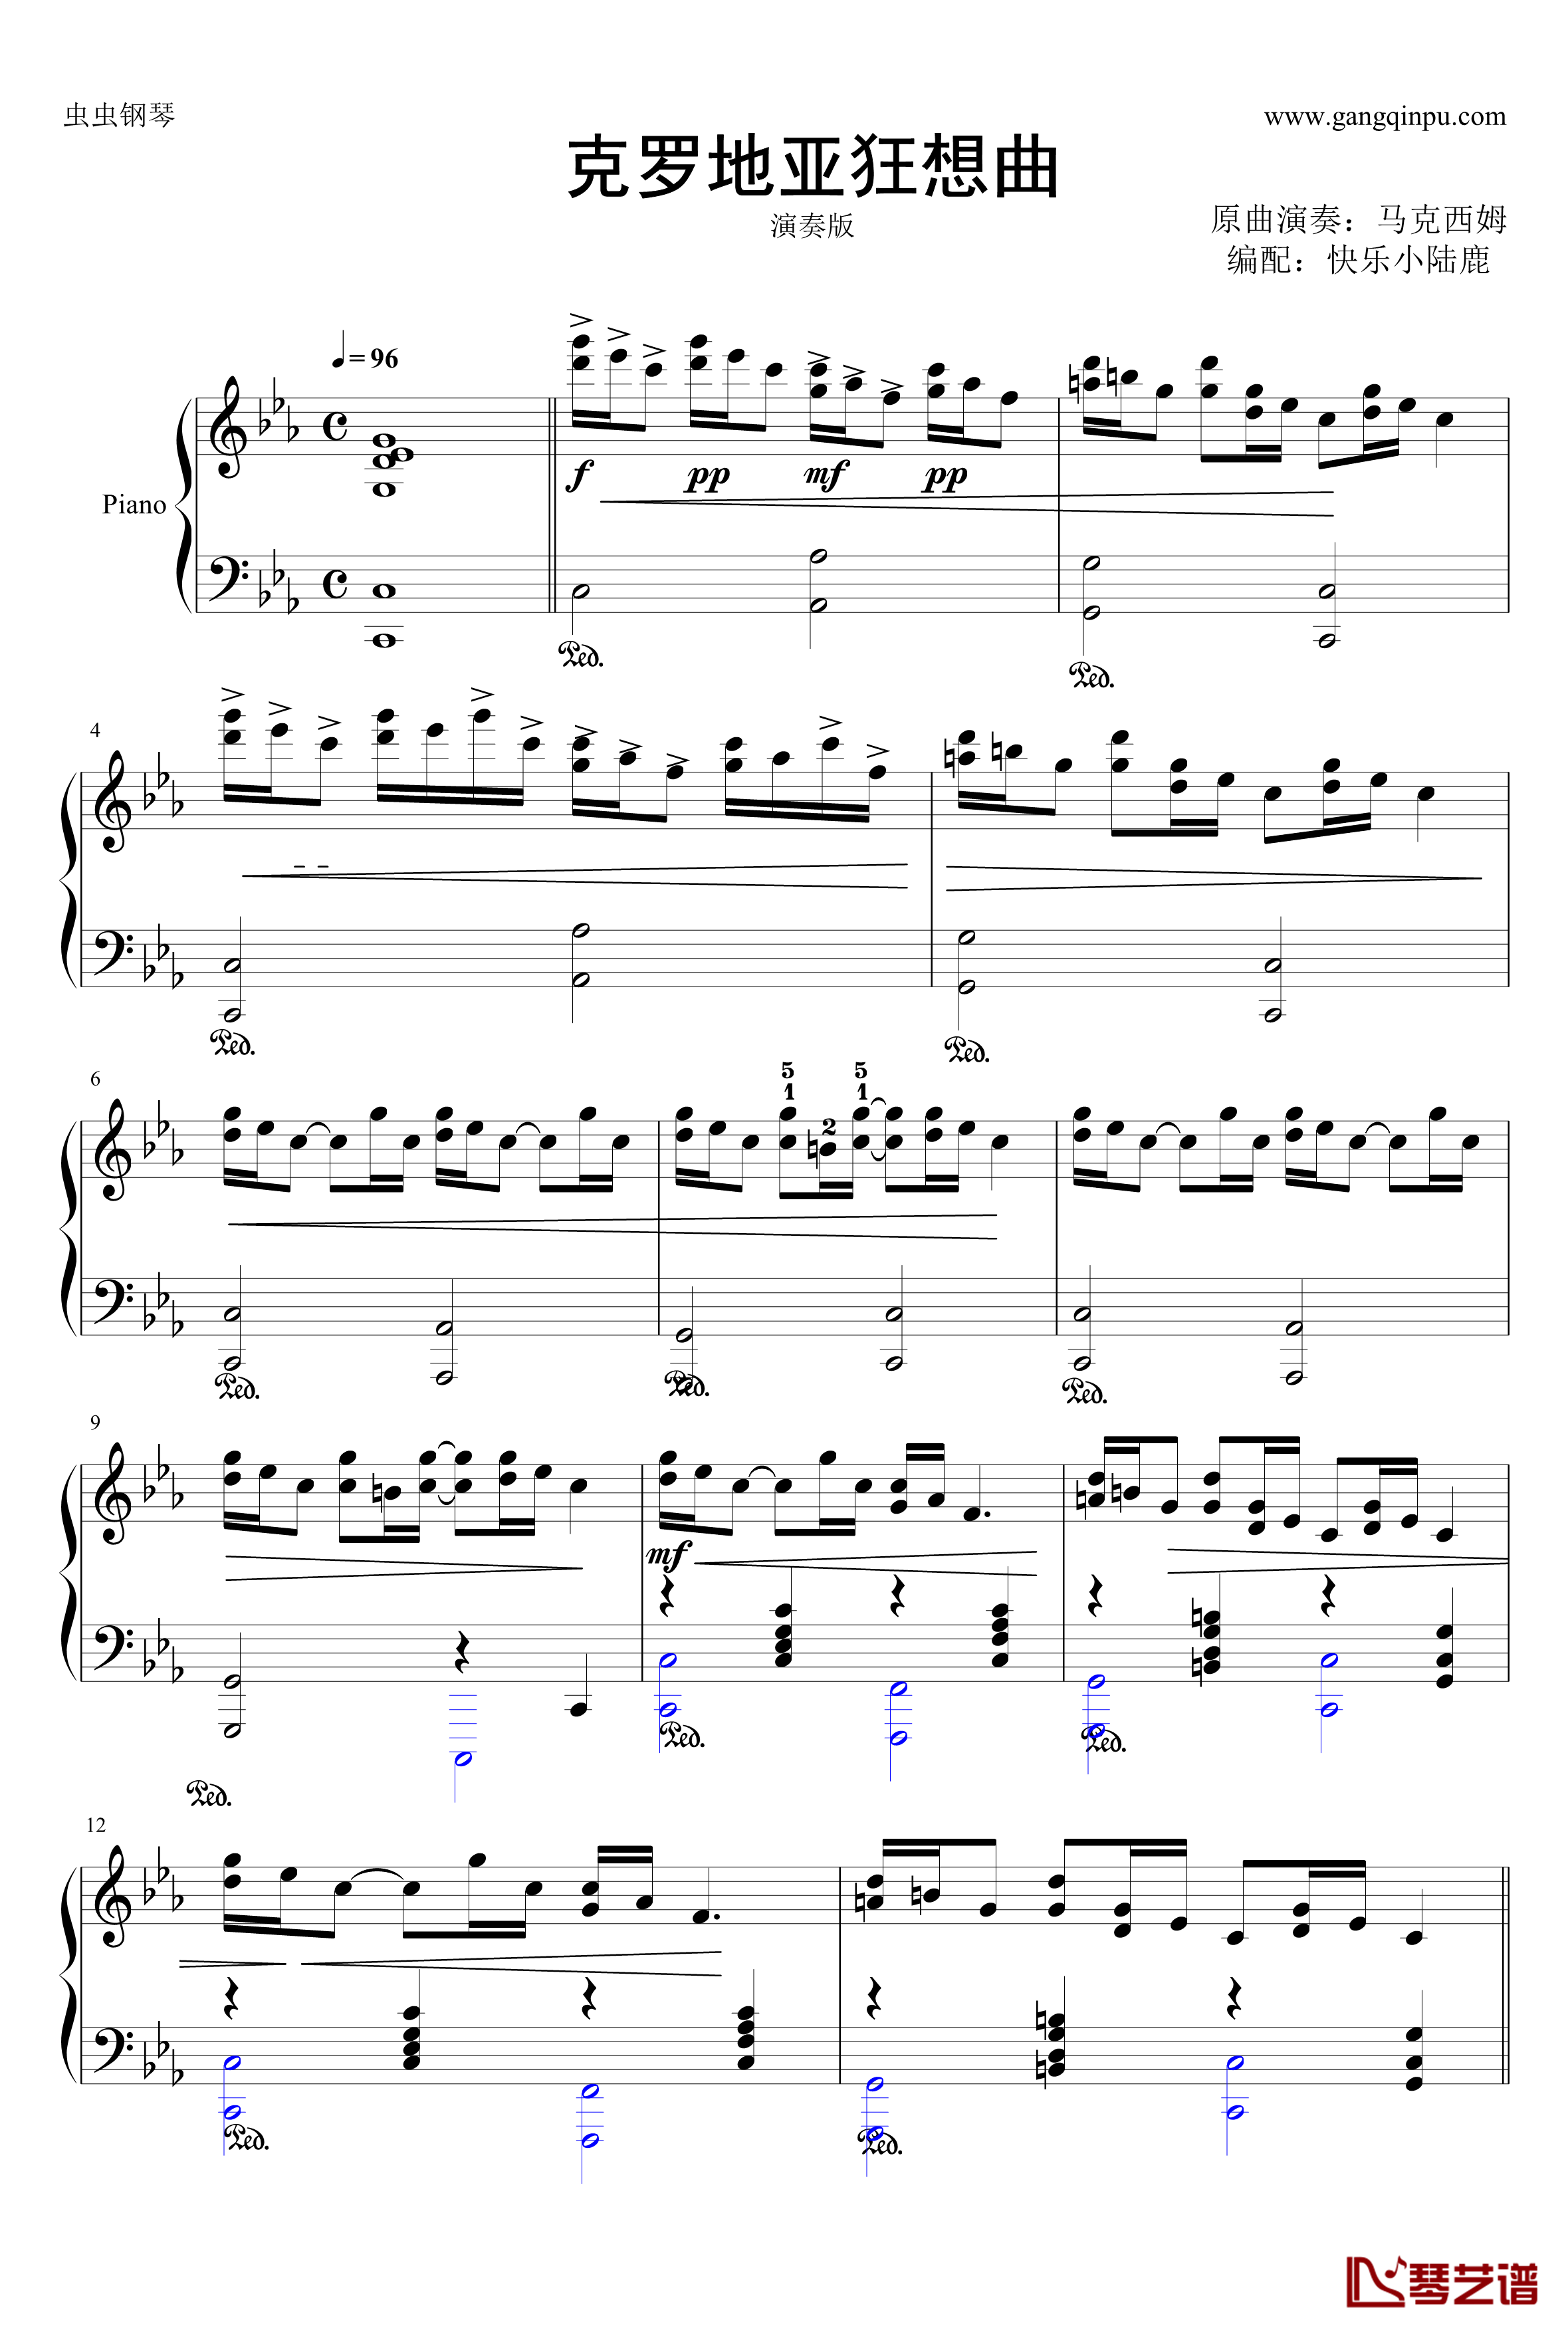 克罗地亚狂想曲钢琴谱-演奏版-马克西姆-Maksim·Mrvica1